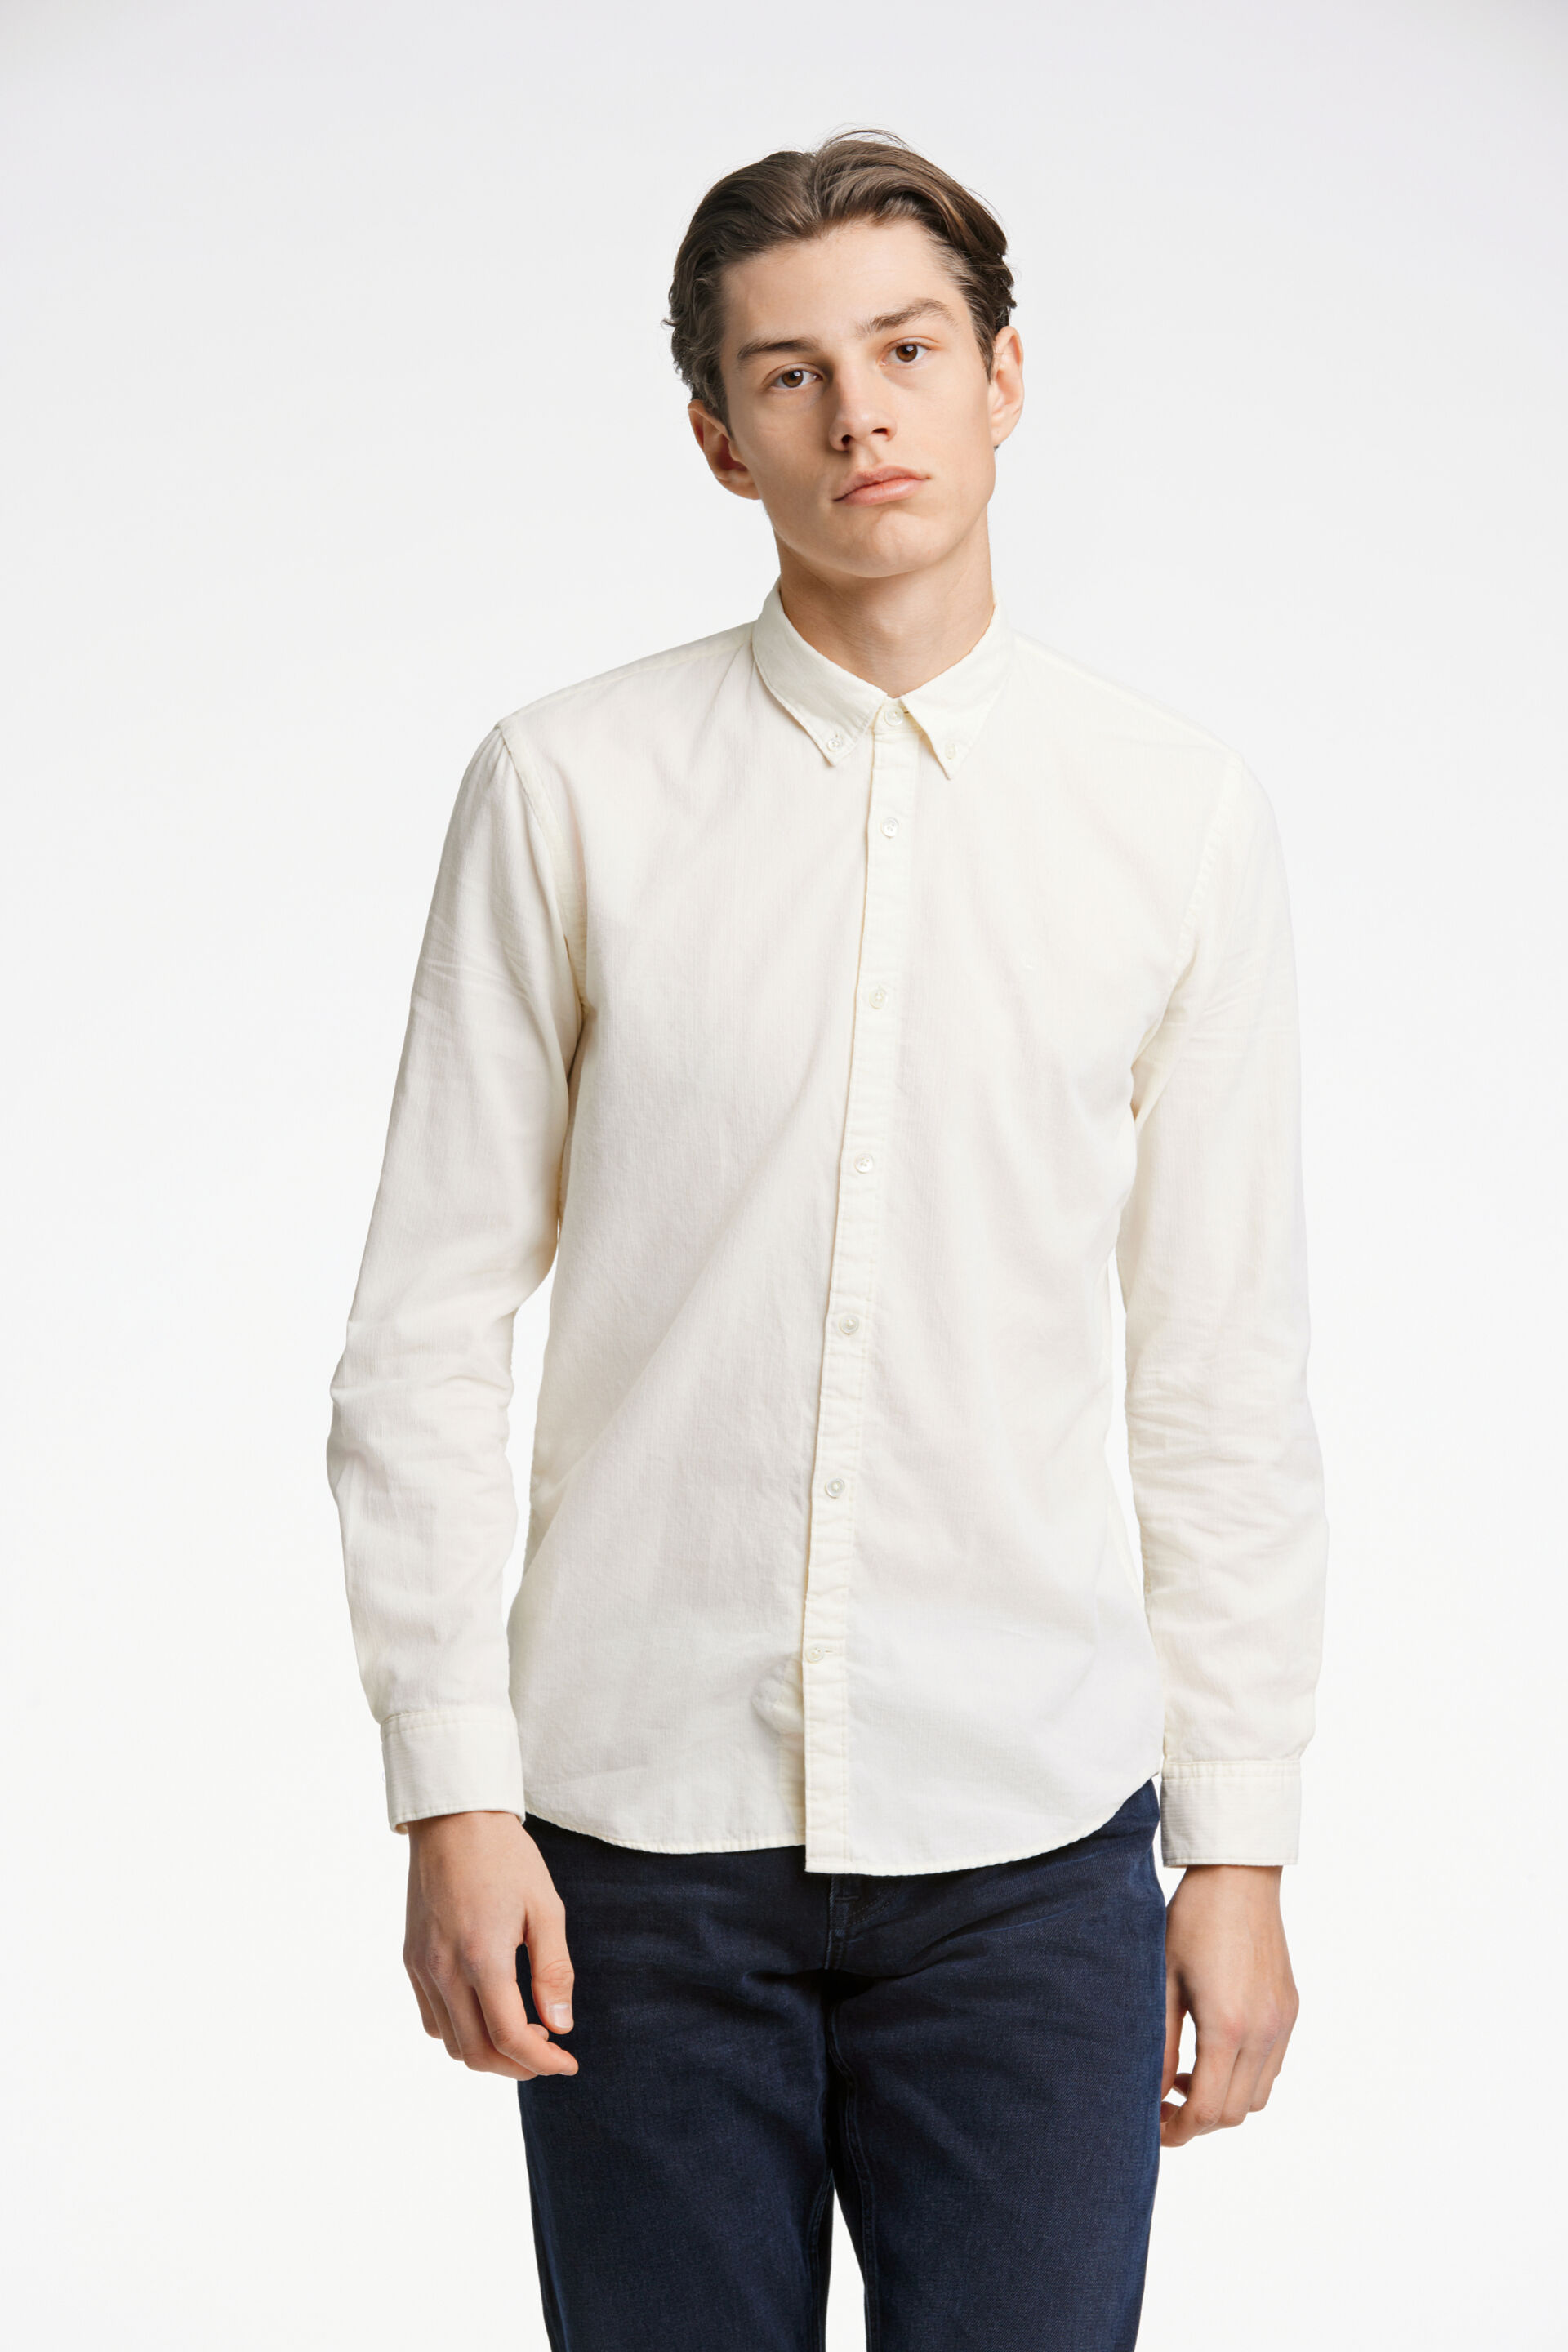 Junk de Luxe  Fløjlsskjorte Hvid 60-205016